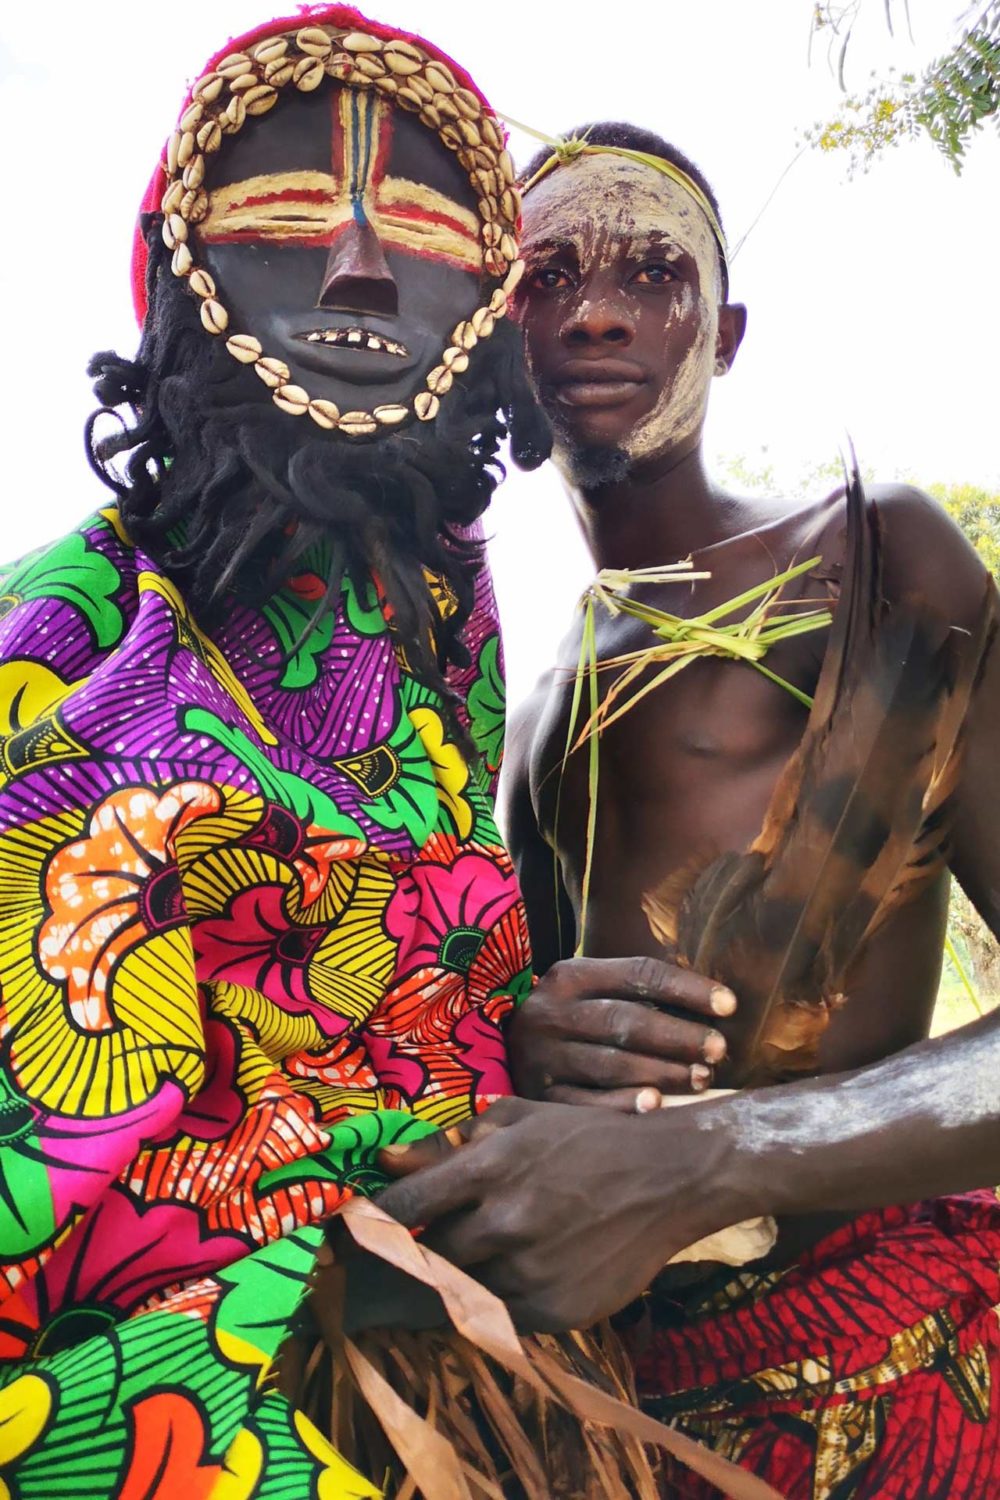 transafrica-articolo-guinea-conakry-liberia-sierra-leone-foreste-maschere-oceano-uomo-costume